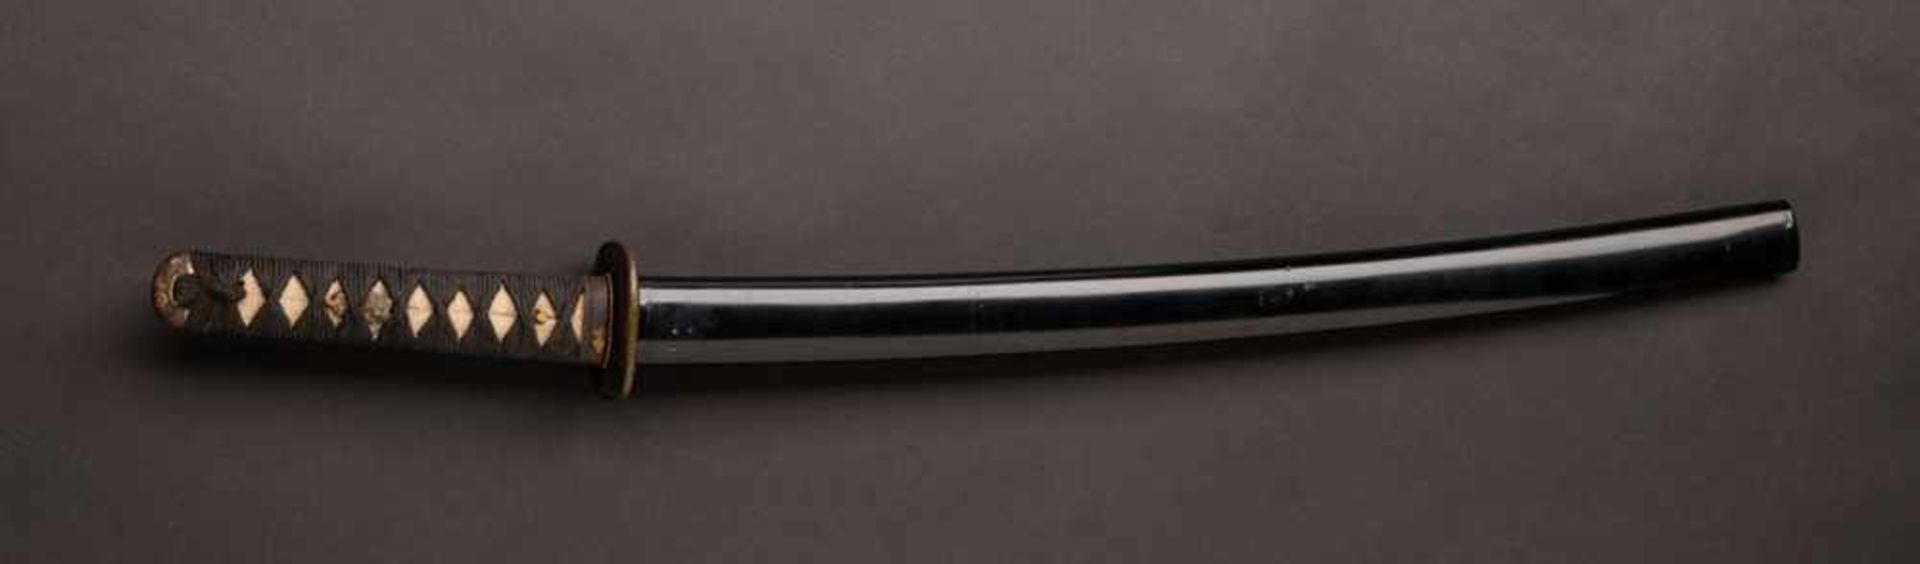 MOUNTED KATANA Japan, blade: ca. 17th century; mounting: 18th to 19th centuryBlade: Japan, ca.